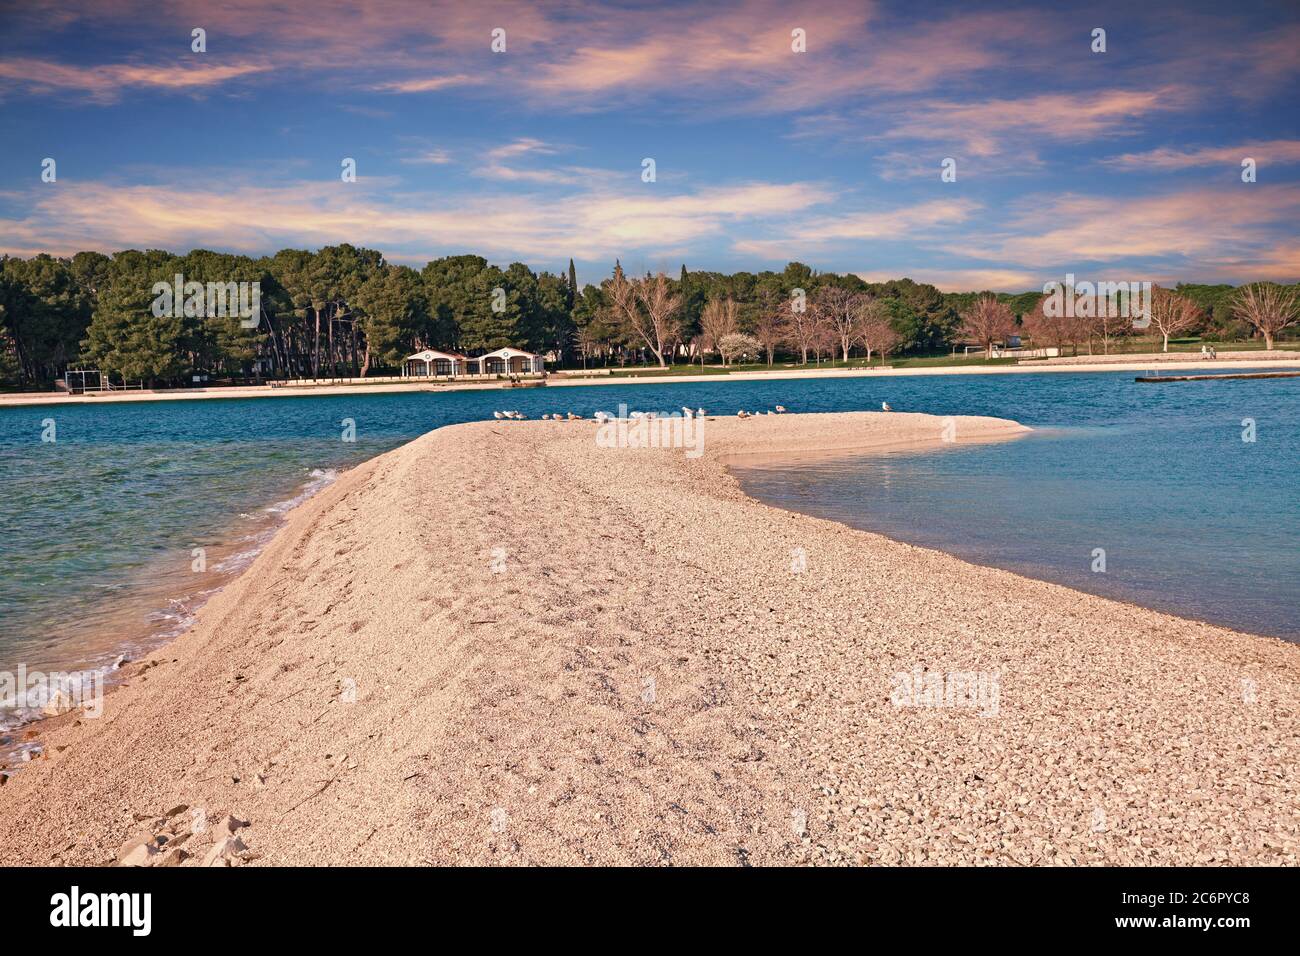 Fazana, Istria, Croazia: Paesaggio al tramonto della baia e della spiaggia del mare Adriatico con gabbiani e pinete sullo sfondo Foto Stock